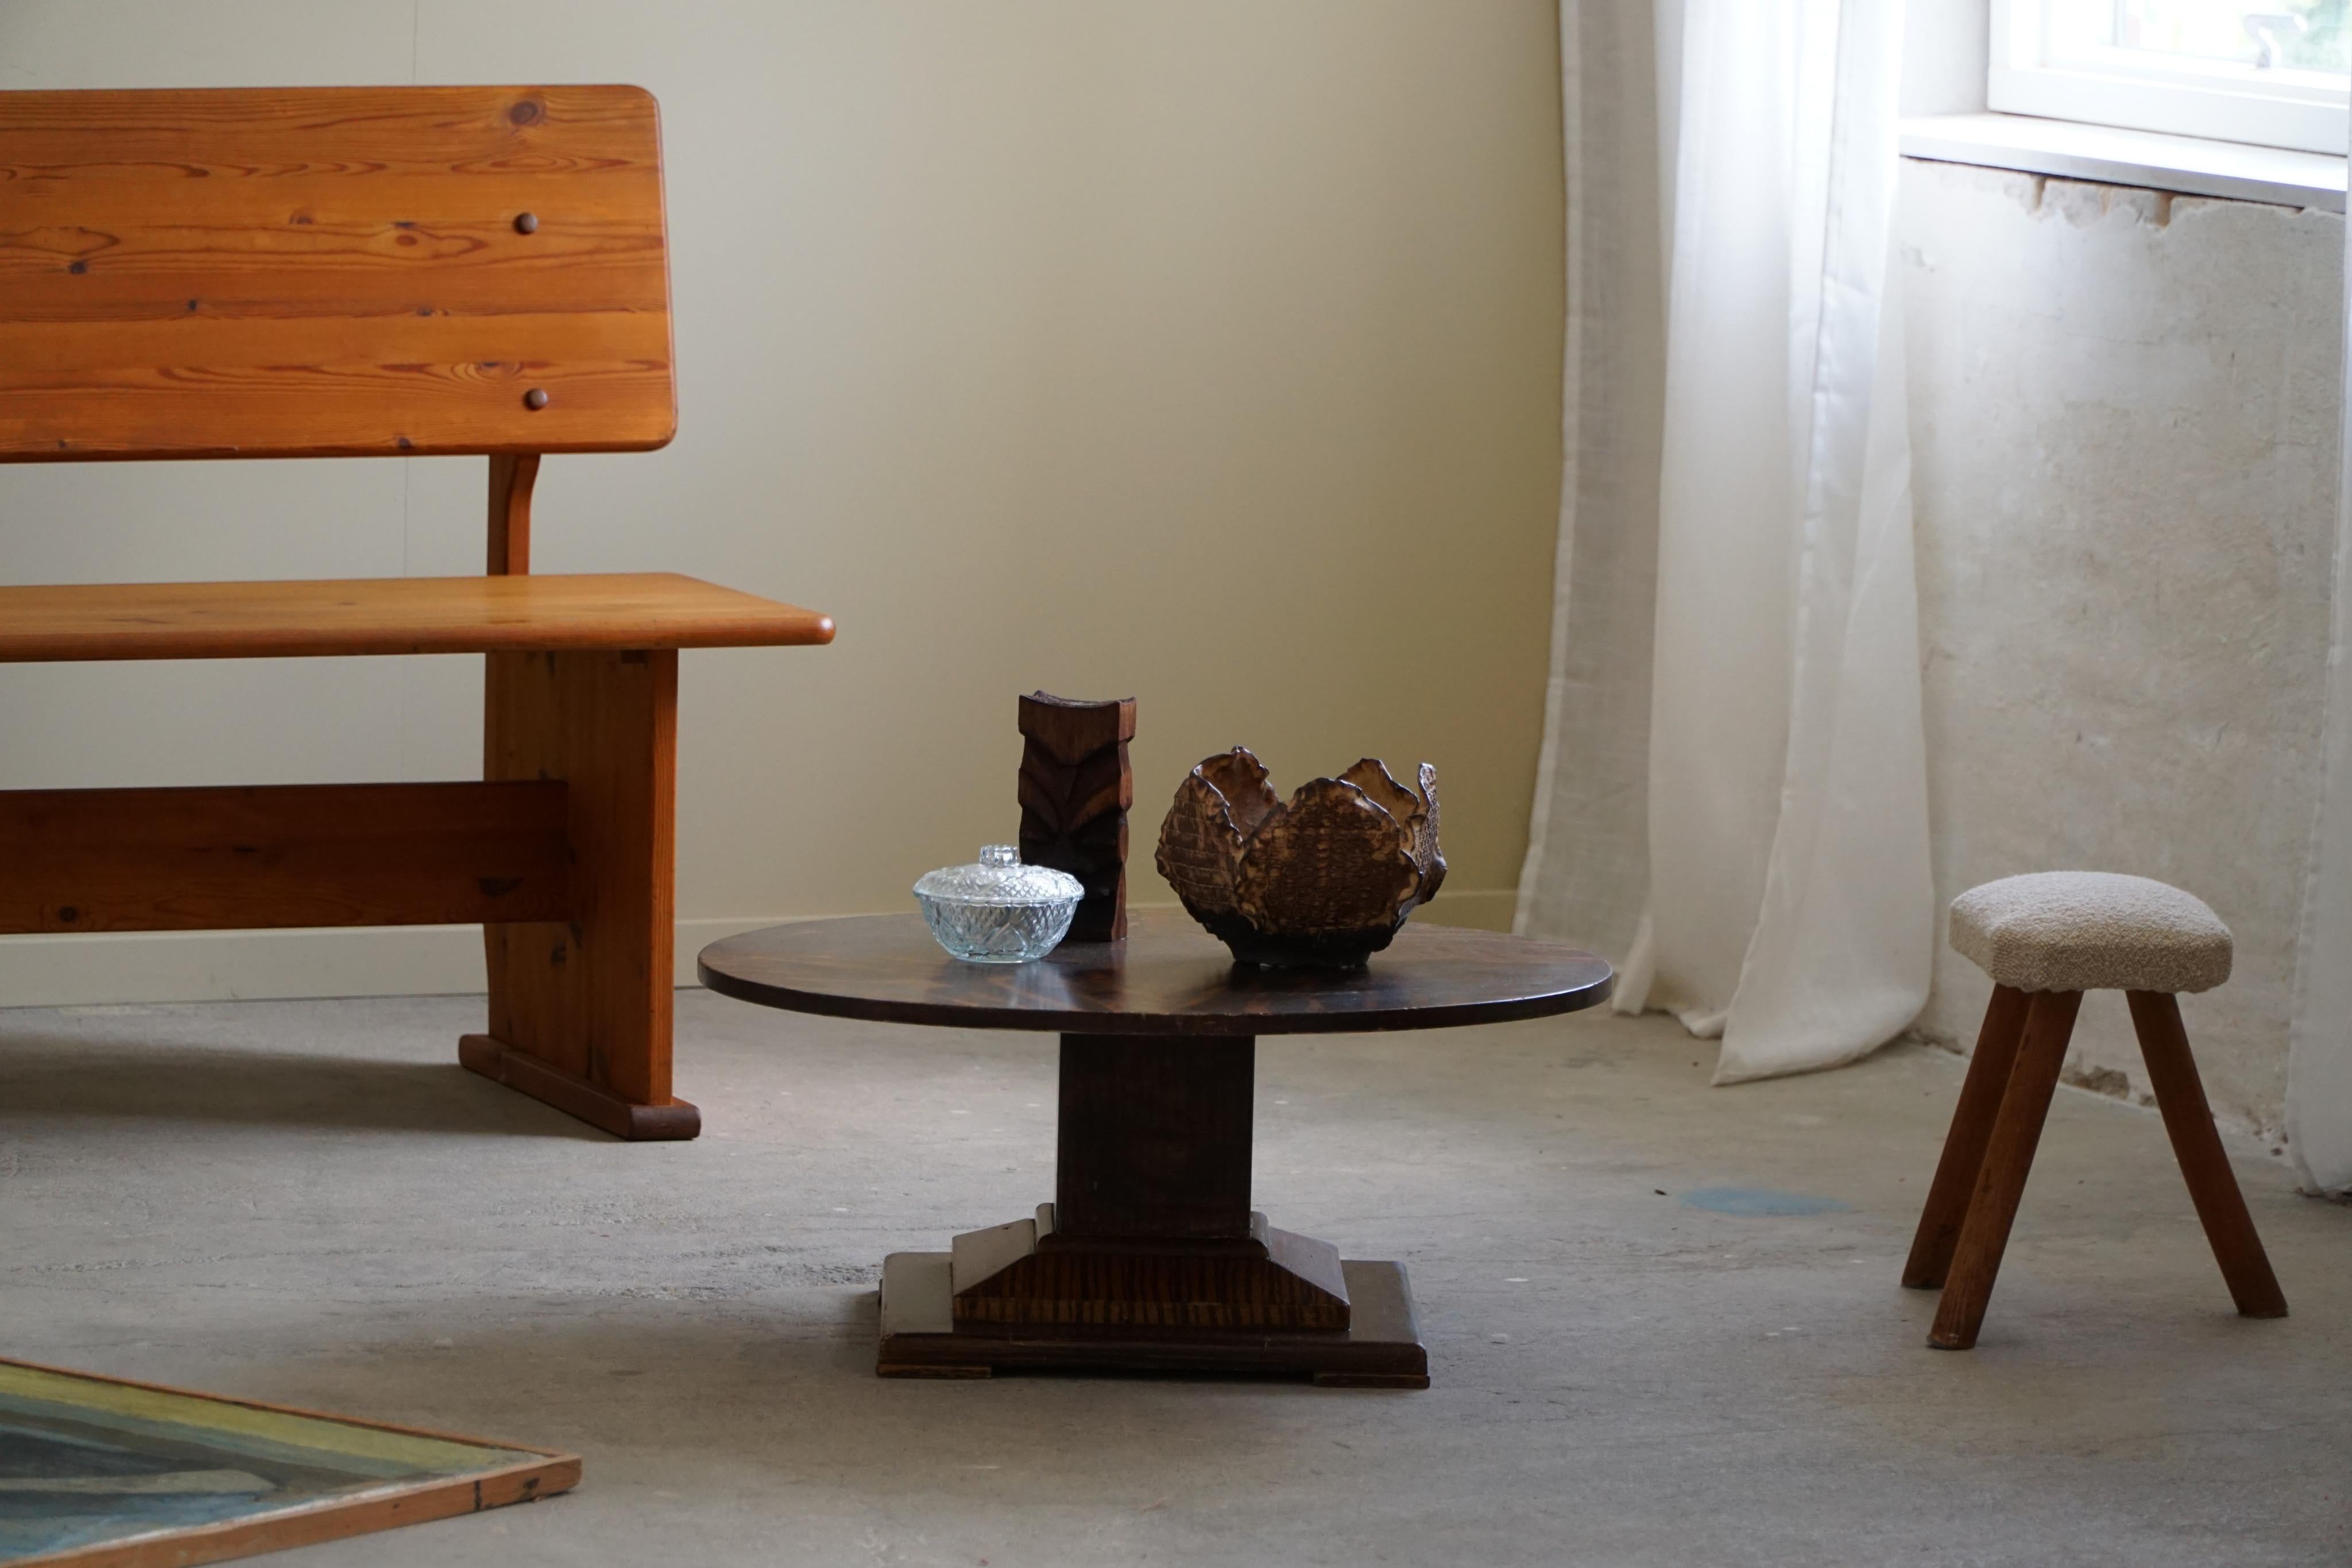 Une luxueuse table d'appoint ronde Art déco en bouleau.
Fabriqué par un ébéniste danois dans les années 1930.

Cette jolie table s'harmonise avec de nombreux styles d'intérieur. Une décoration moderne, antique, classique, scandinave ou Art